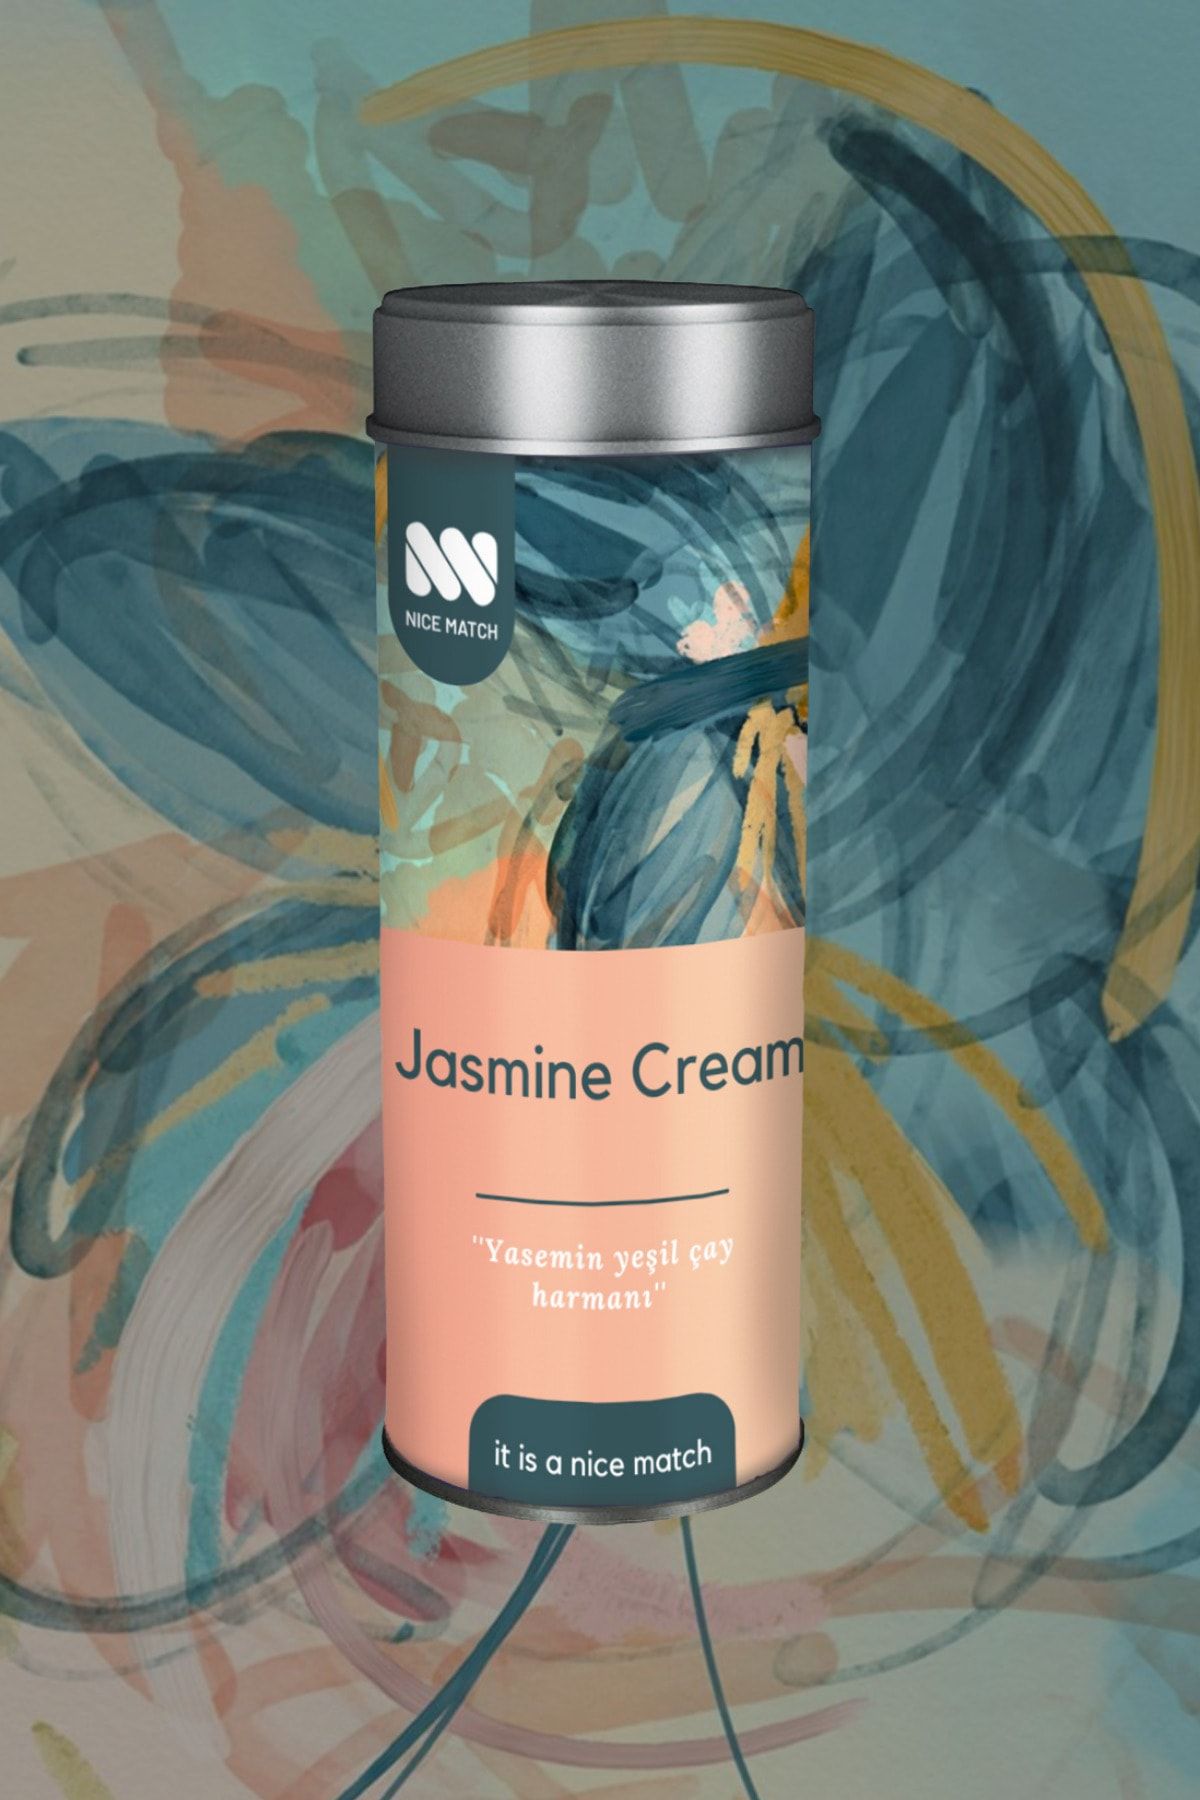 Nice Match Jasmine Cream Tea - Yasemin Yeşil Çay